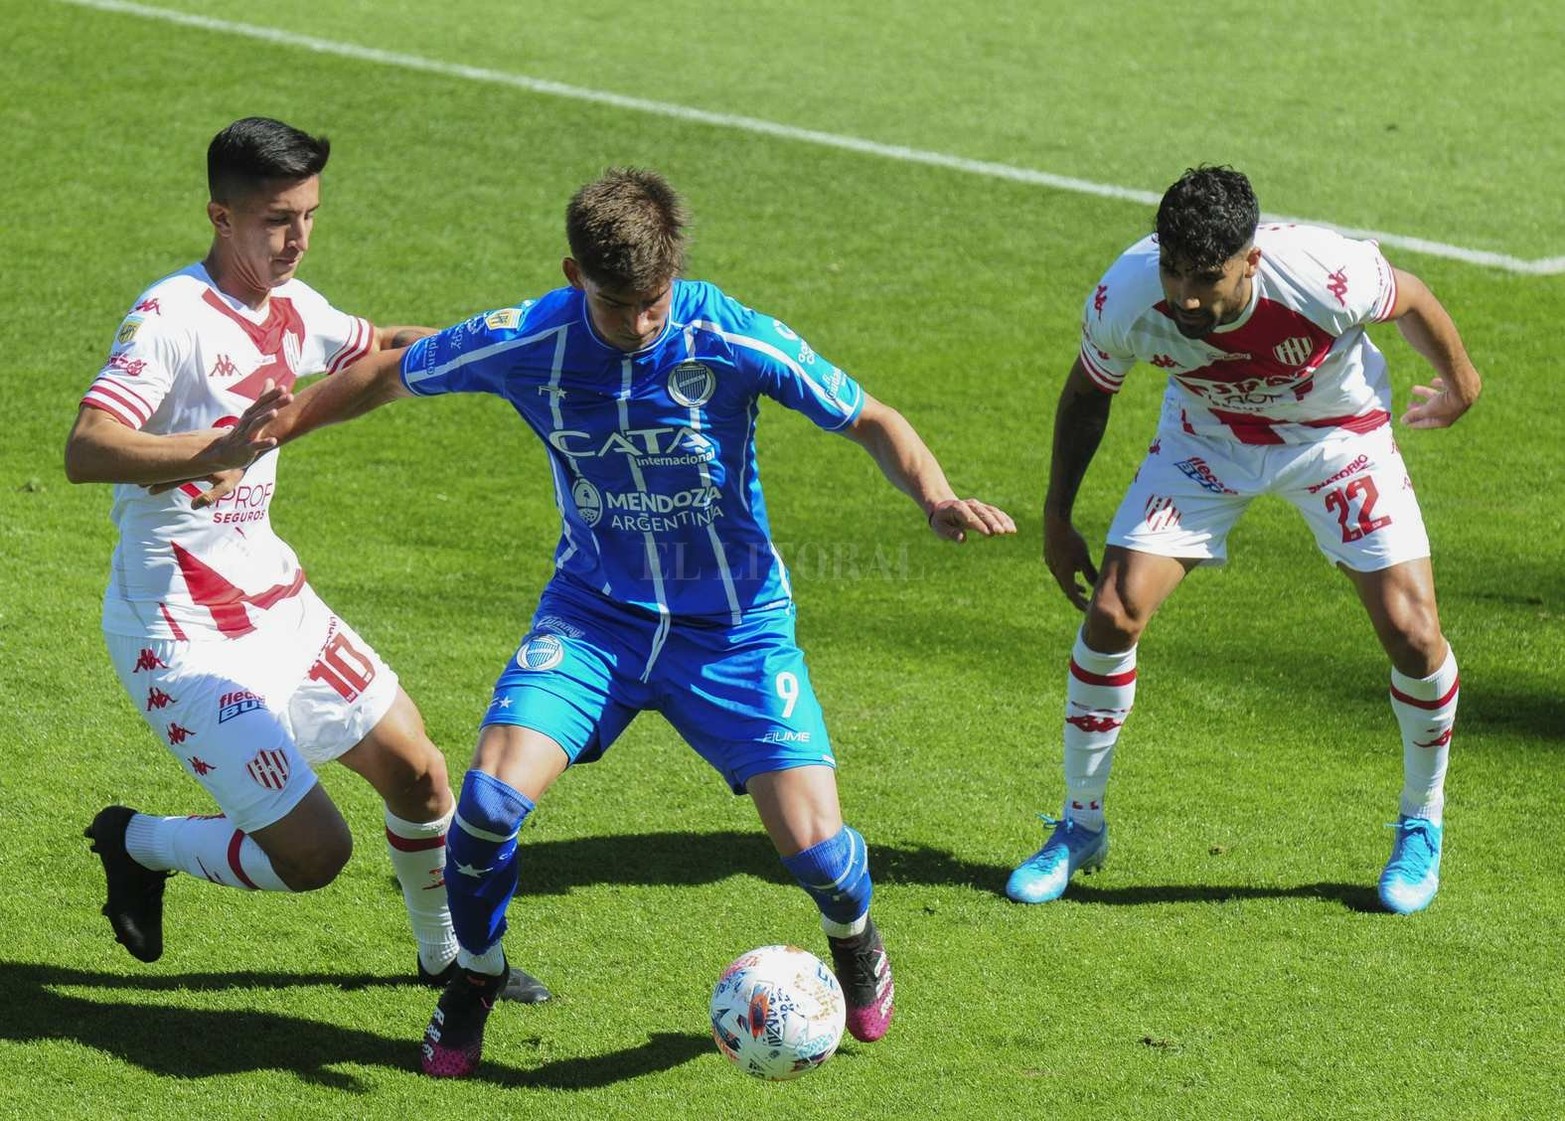 Con goles de Brítez y Cordero, Unión superó 2 a 1 a Godoy Cruz en Mendoza.